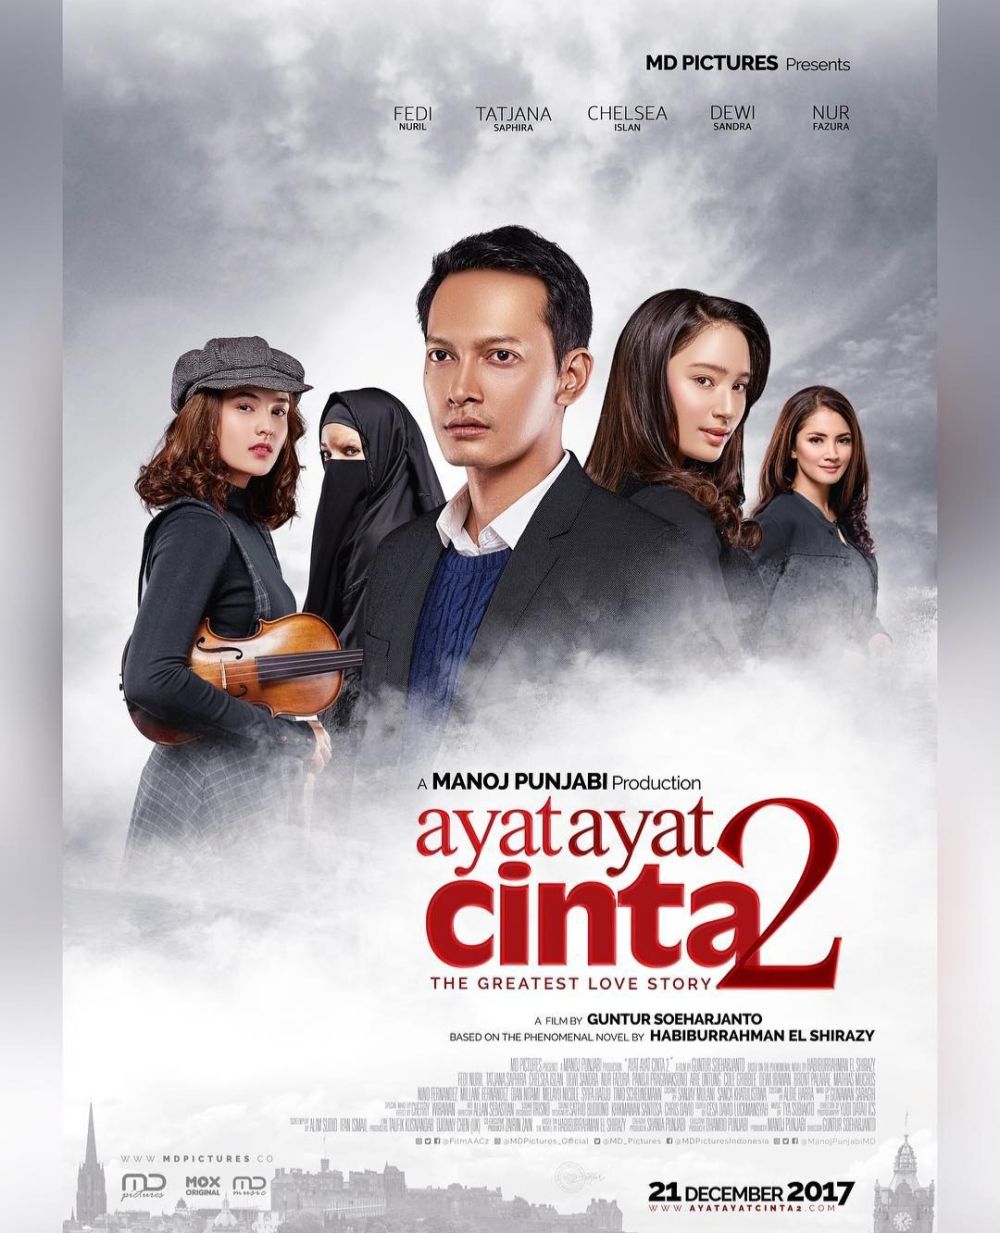 7 Film Religi Indonesia Raih Lebih dari 1 Juta Penonton, Gak Nyangka